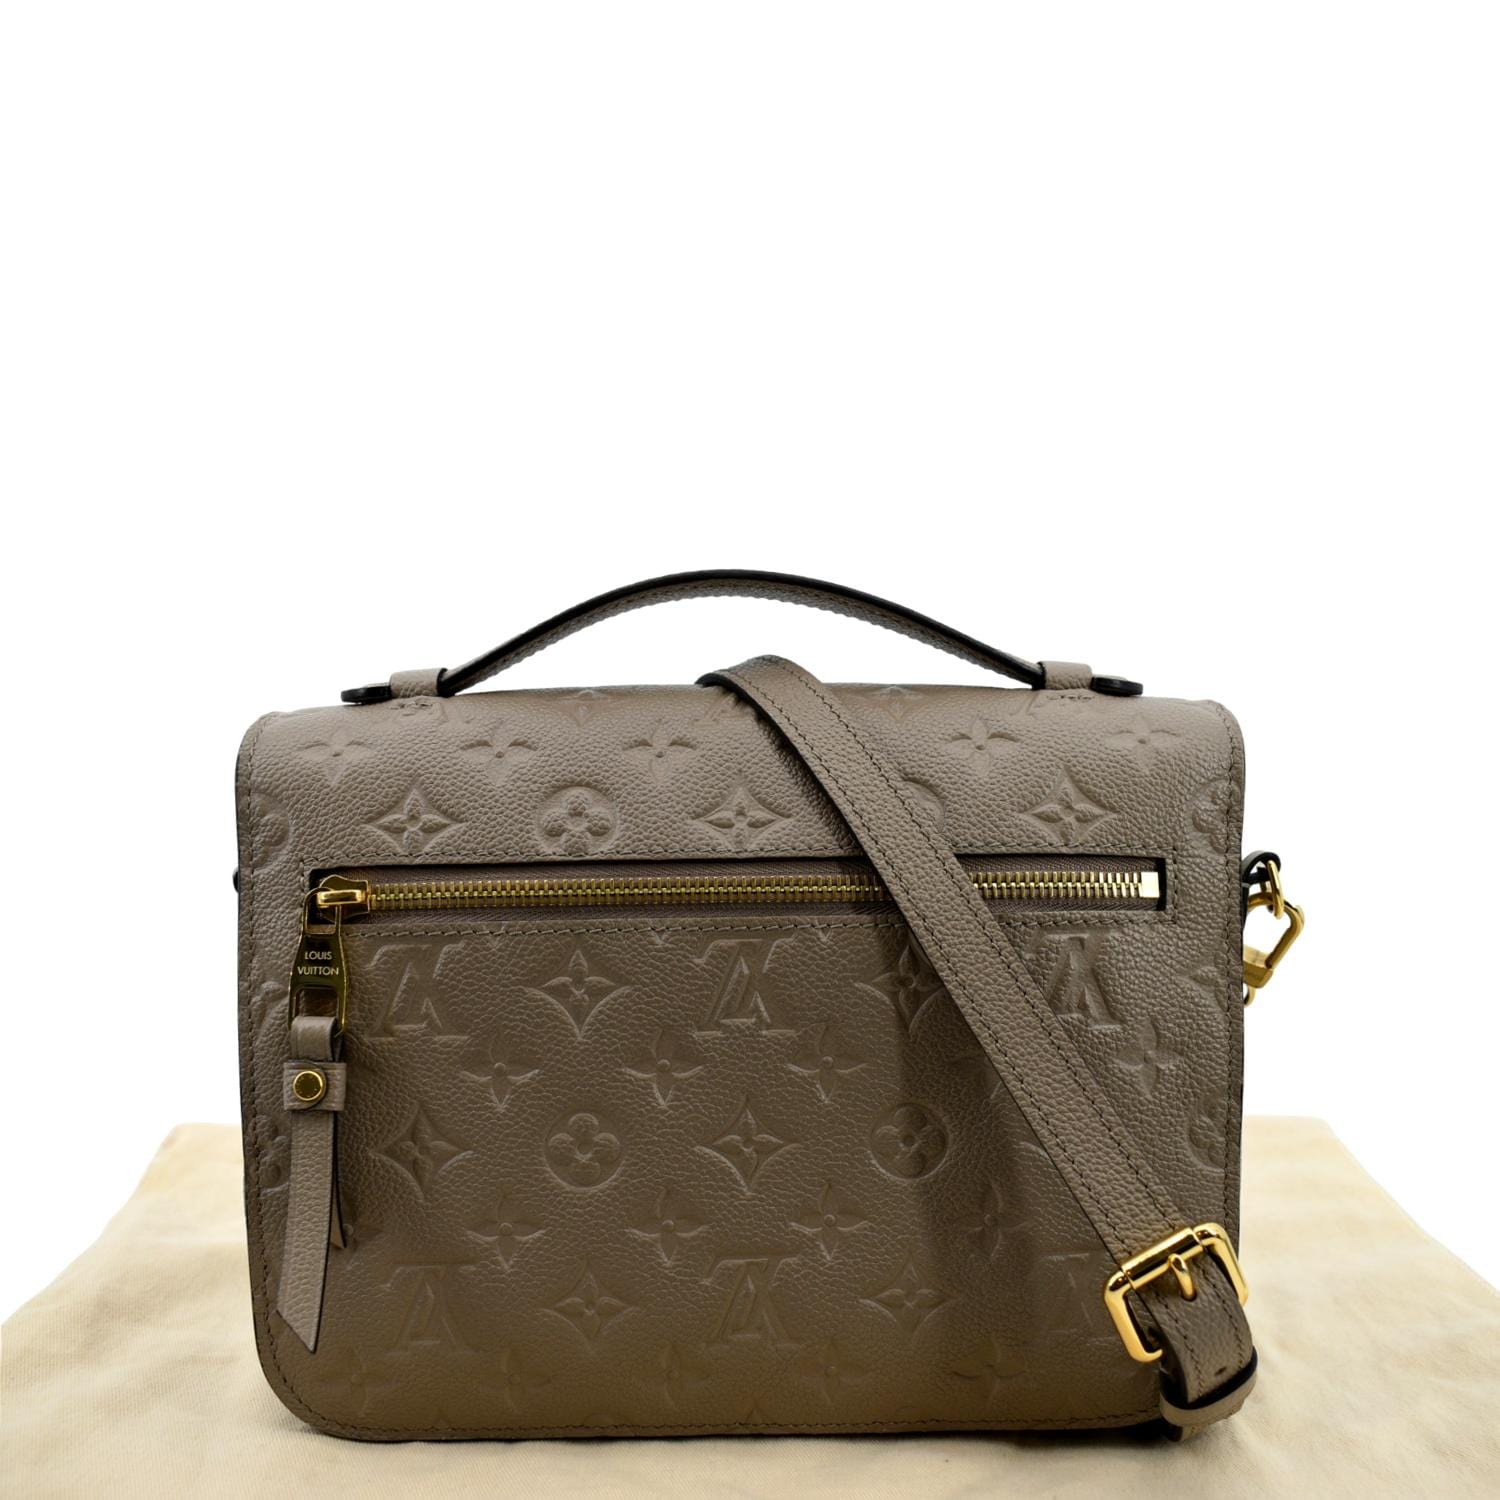 Louis Vuitton Pochette Metis Empreinte Tourterelle Leather